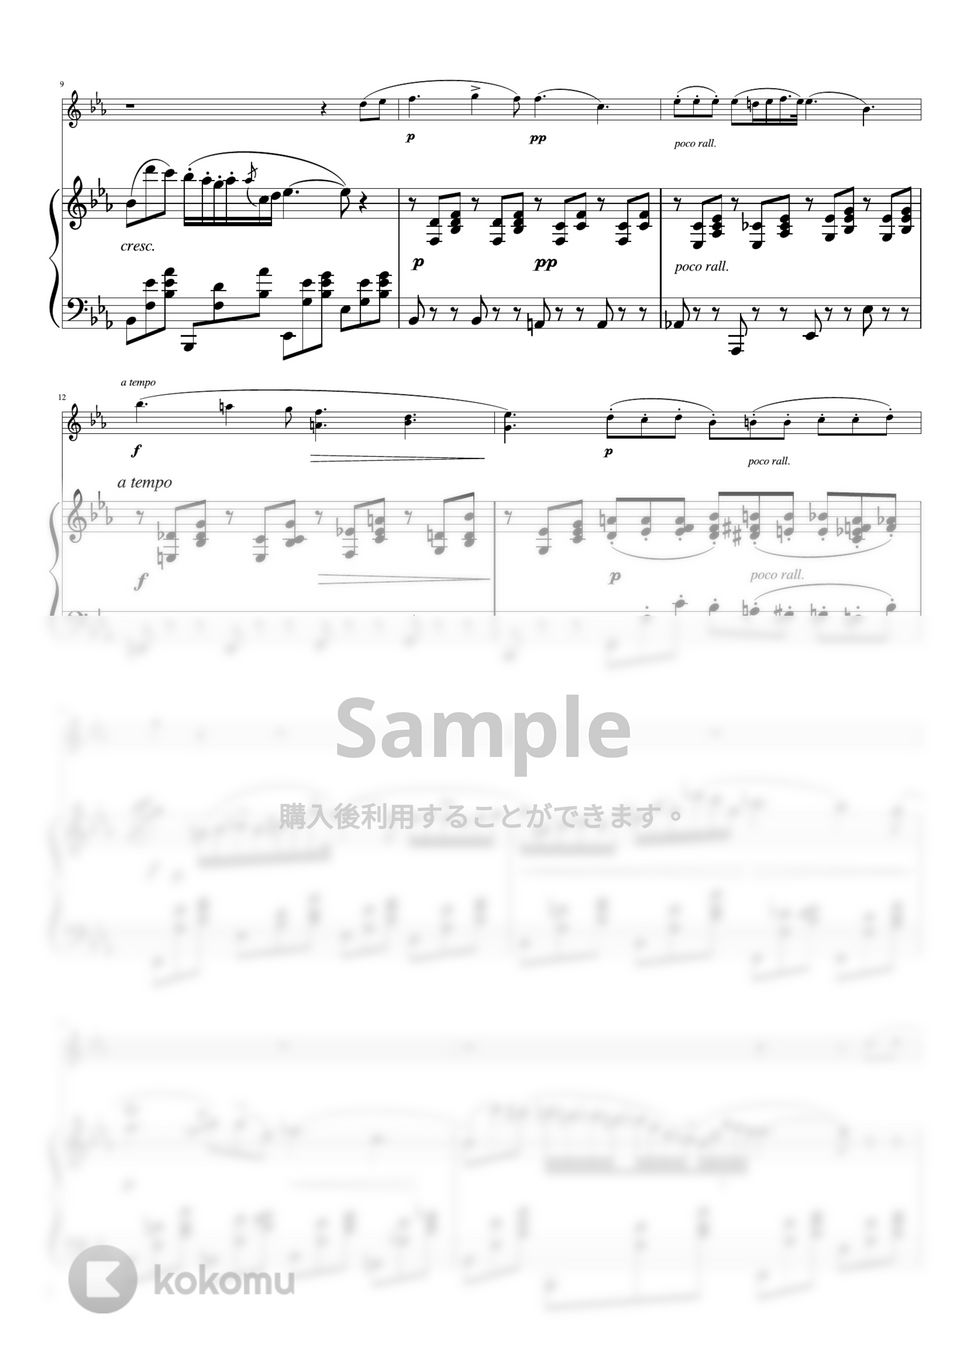 ショパン - ノクターン第２番 (バイオリン&ピアノ) by pfkaori